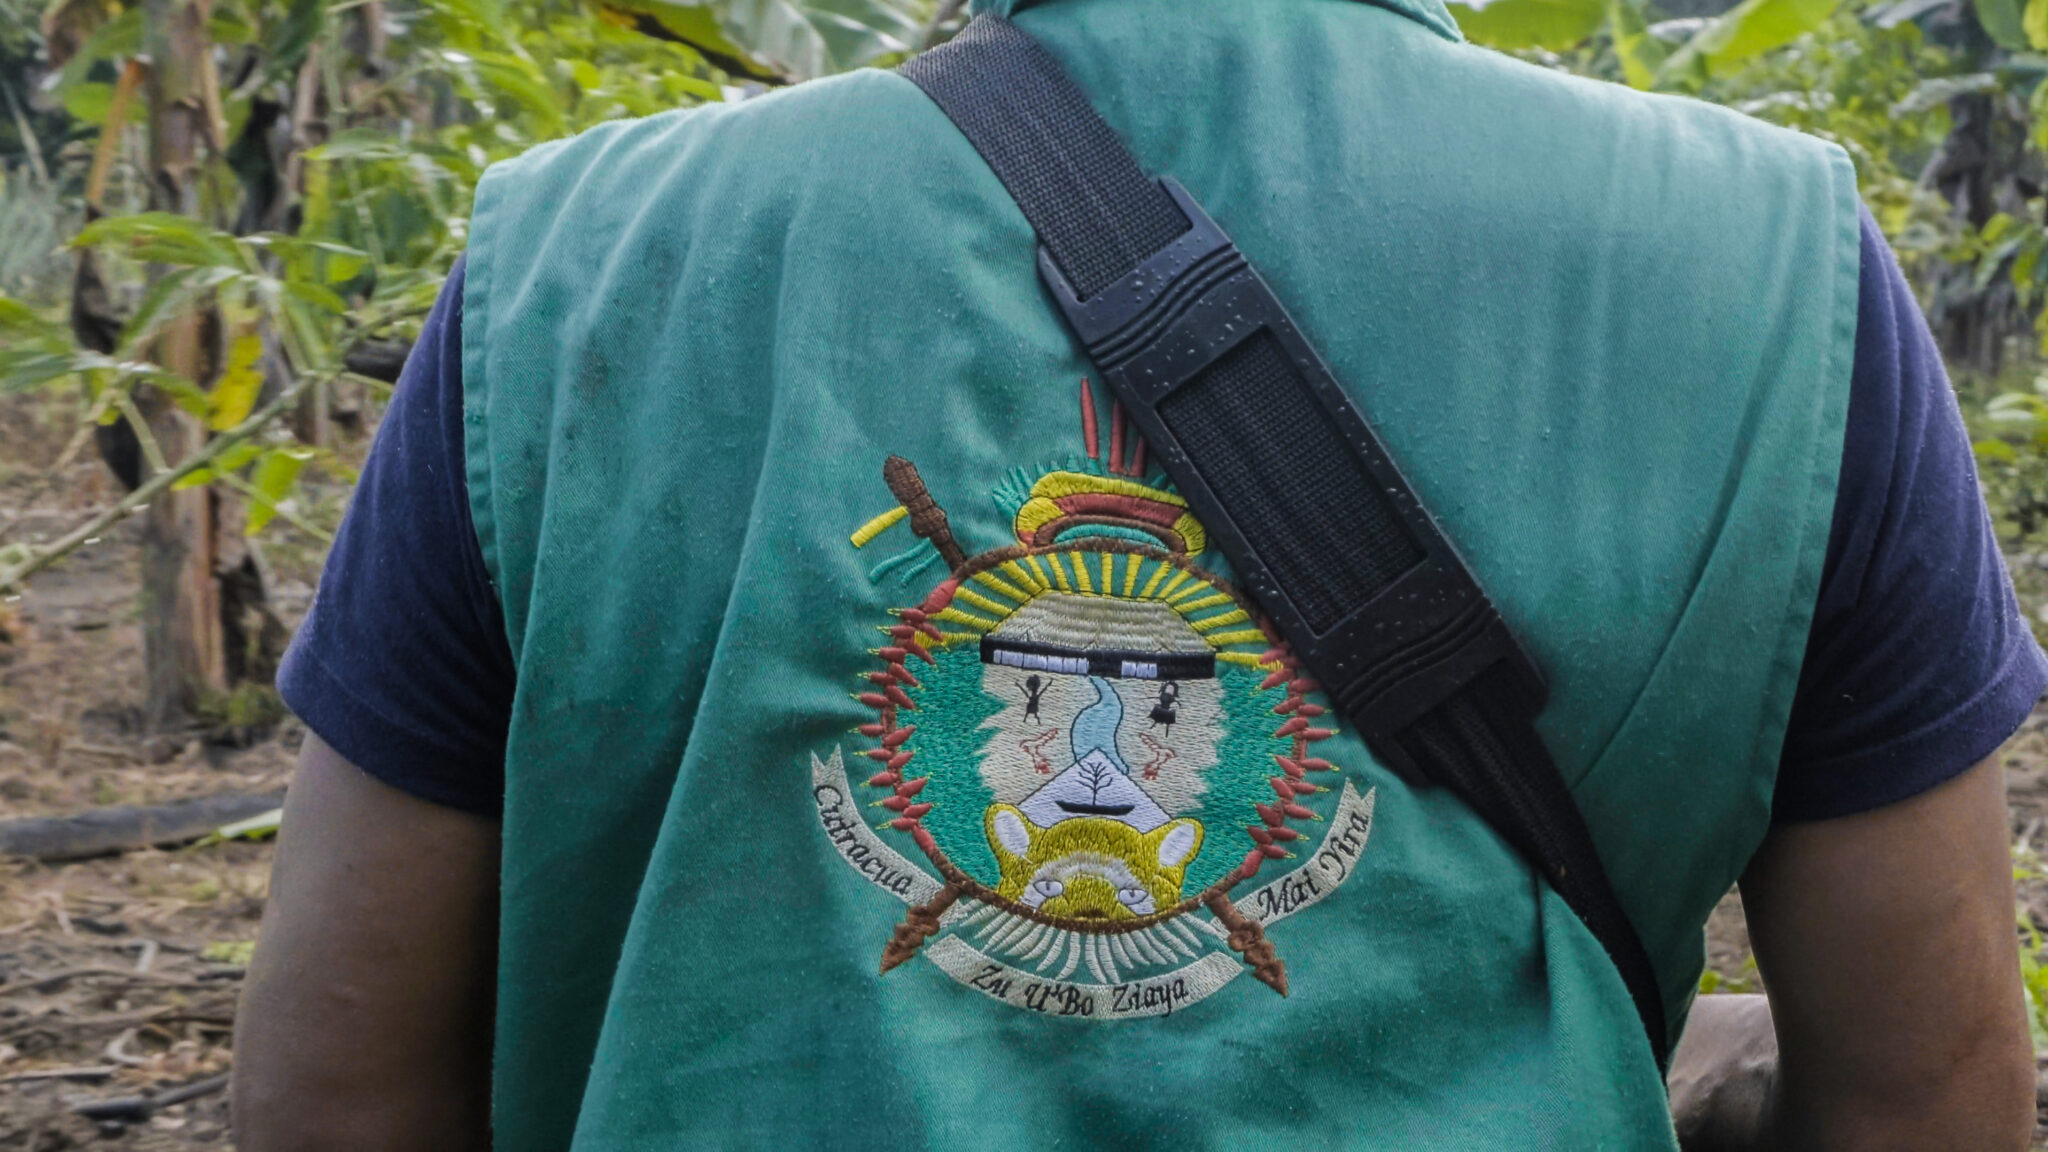 Las guardias indígenas enfrentan la ilegalidad armados con bastones de mando, en gran parte de los resguardos amazónicos. Foto: Sergio Alejandro Melgarejo.